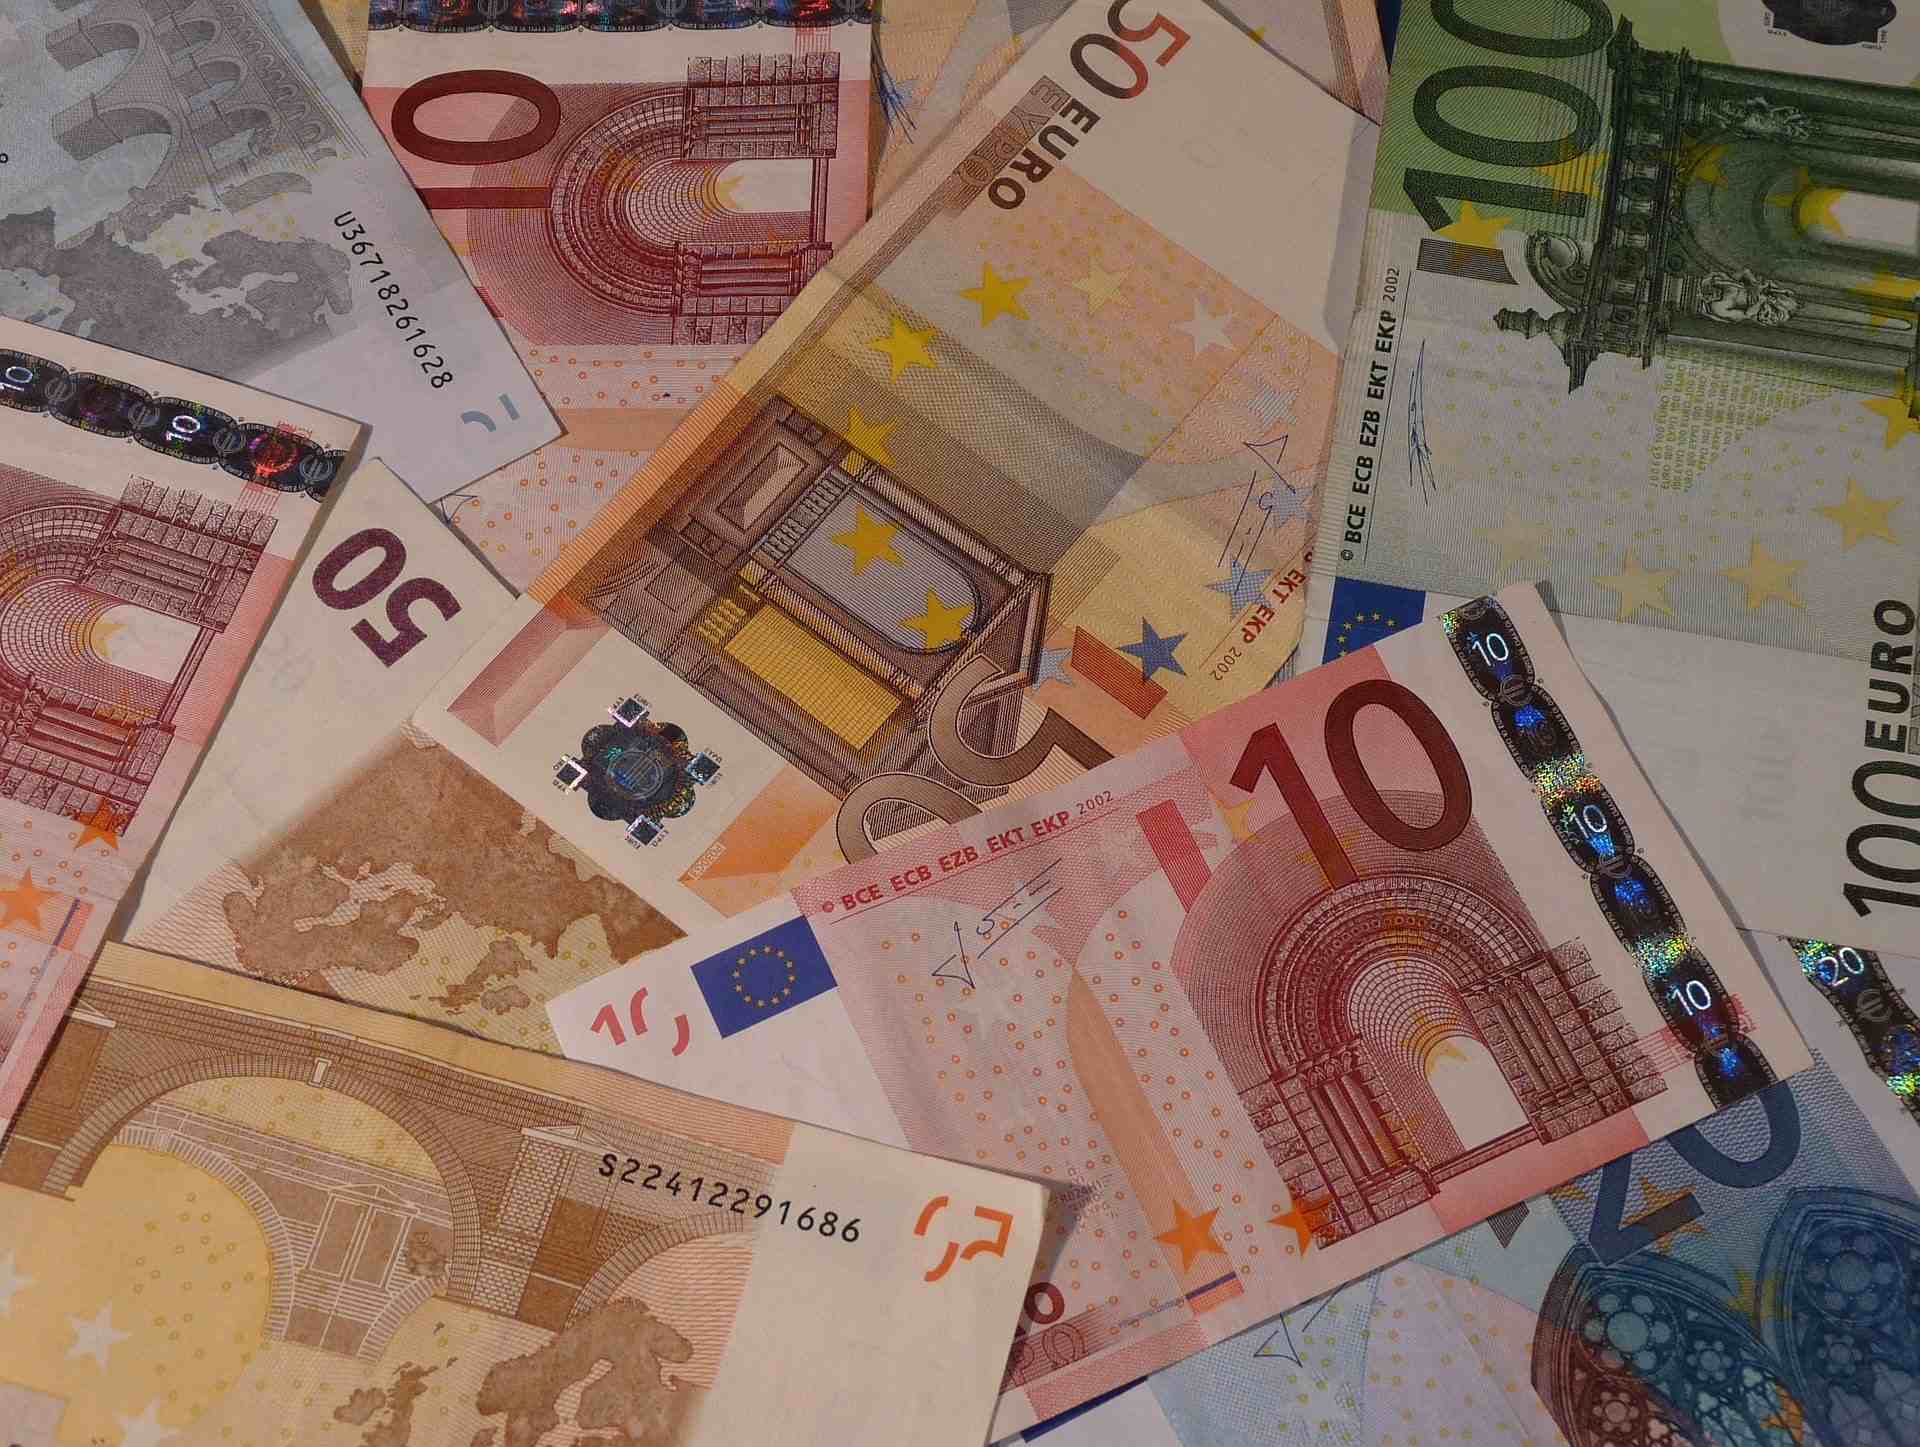 Ein Bild von 10 Euro Scheinen